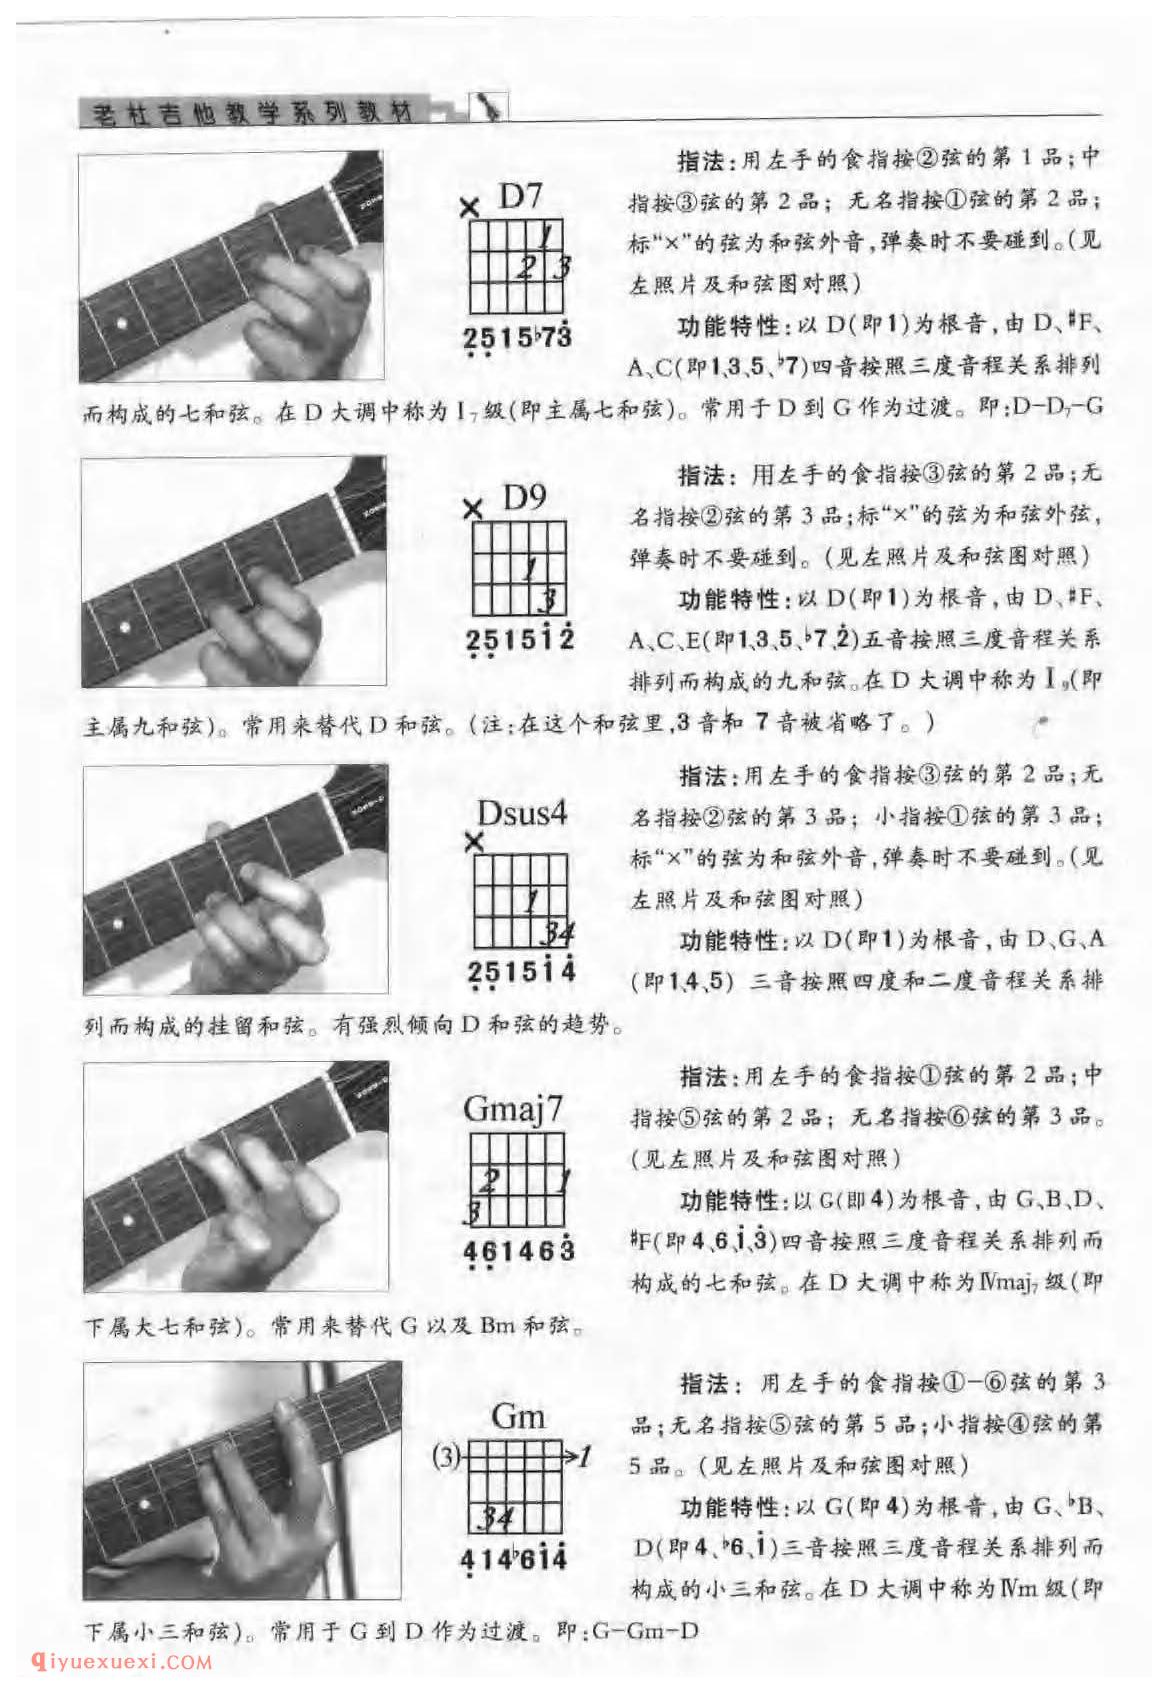 吉他D大调与b小调的的音阶及指板音位图_D大调与b小调的和弦指法与练习